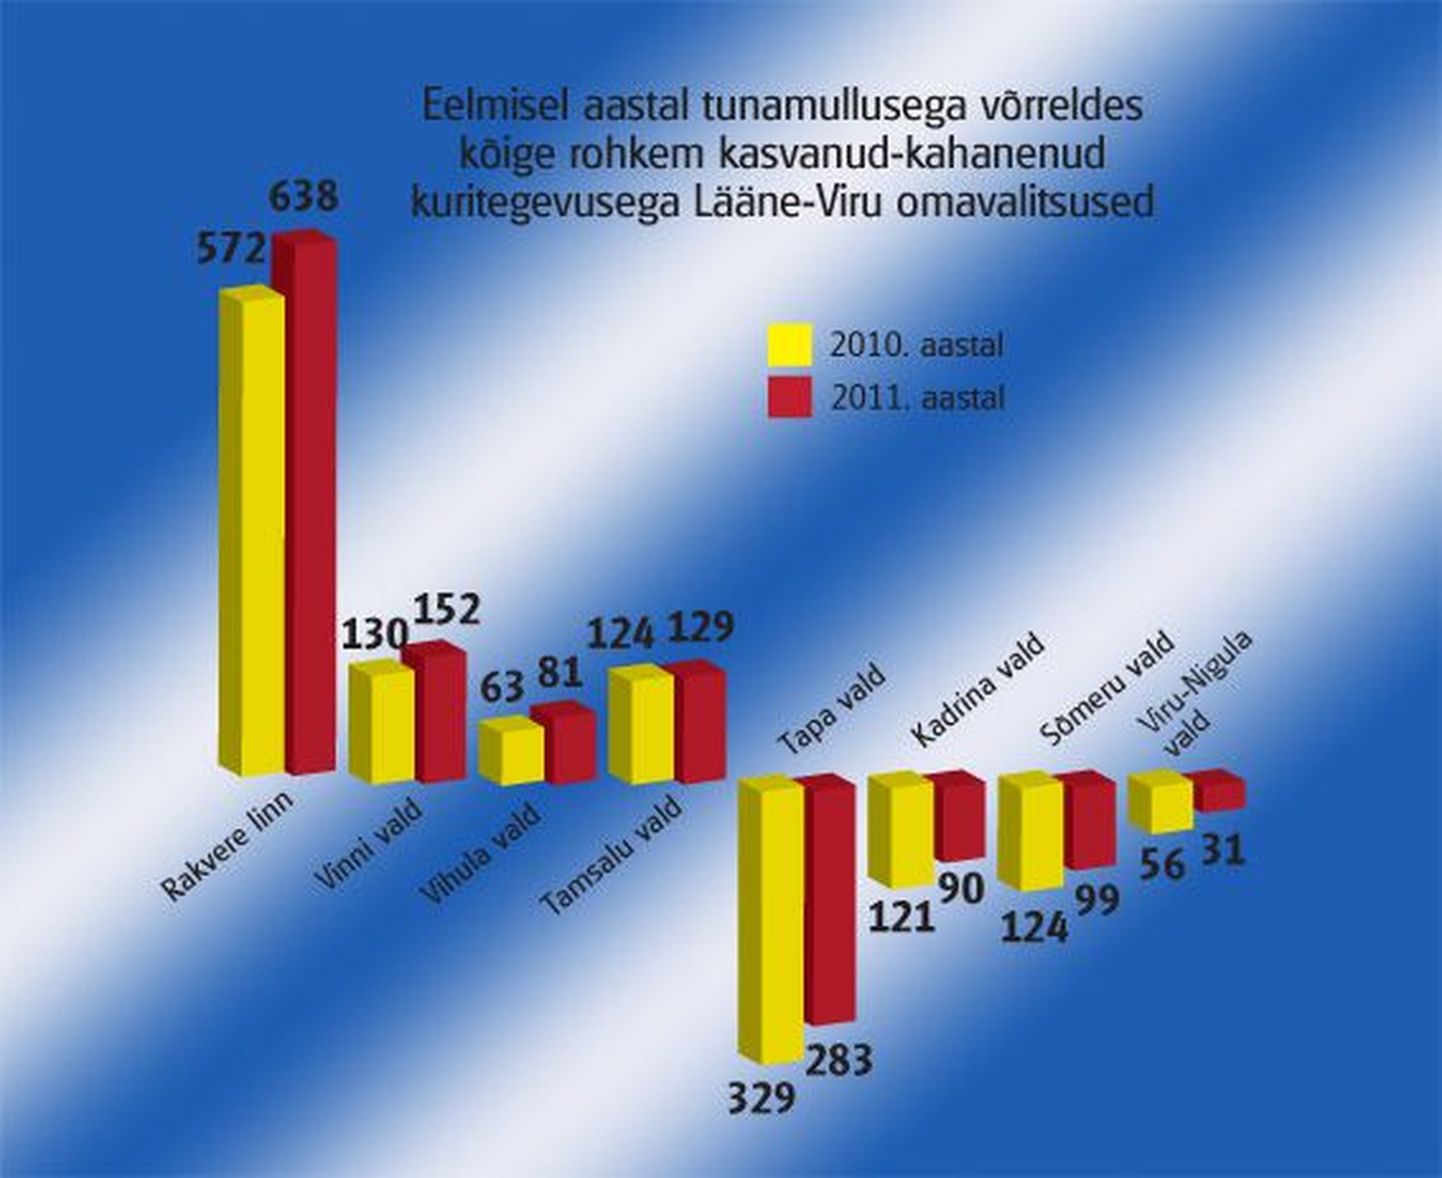 Eelmise aasta registreeritud kuritegevuse statistika järgi tõusis Lääne-Virumaal eelmisel aastal tunamullusega võrreldes kuritegevus kõige rohkem Rakvere linnas, vähenes Tapa vallas.